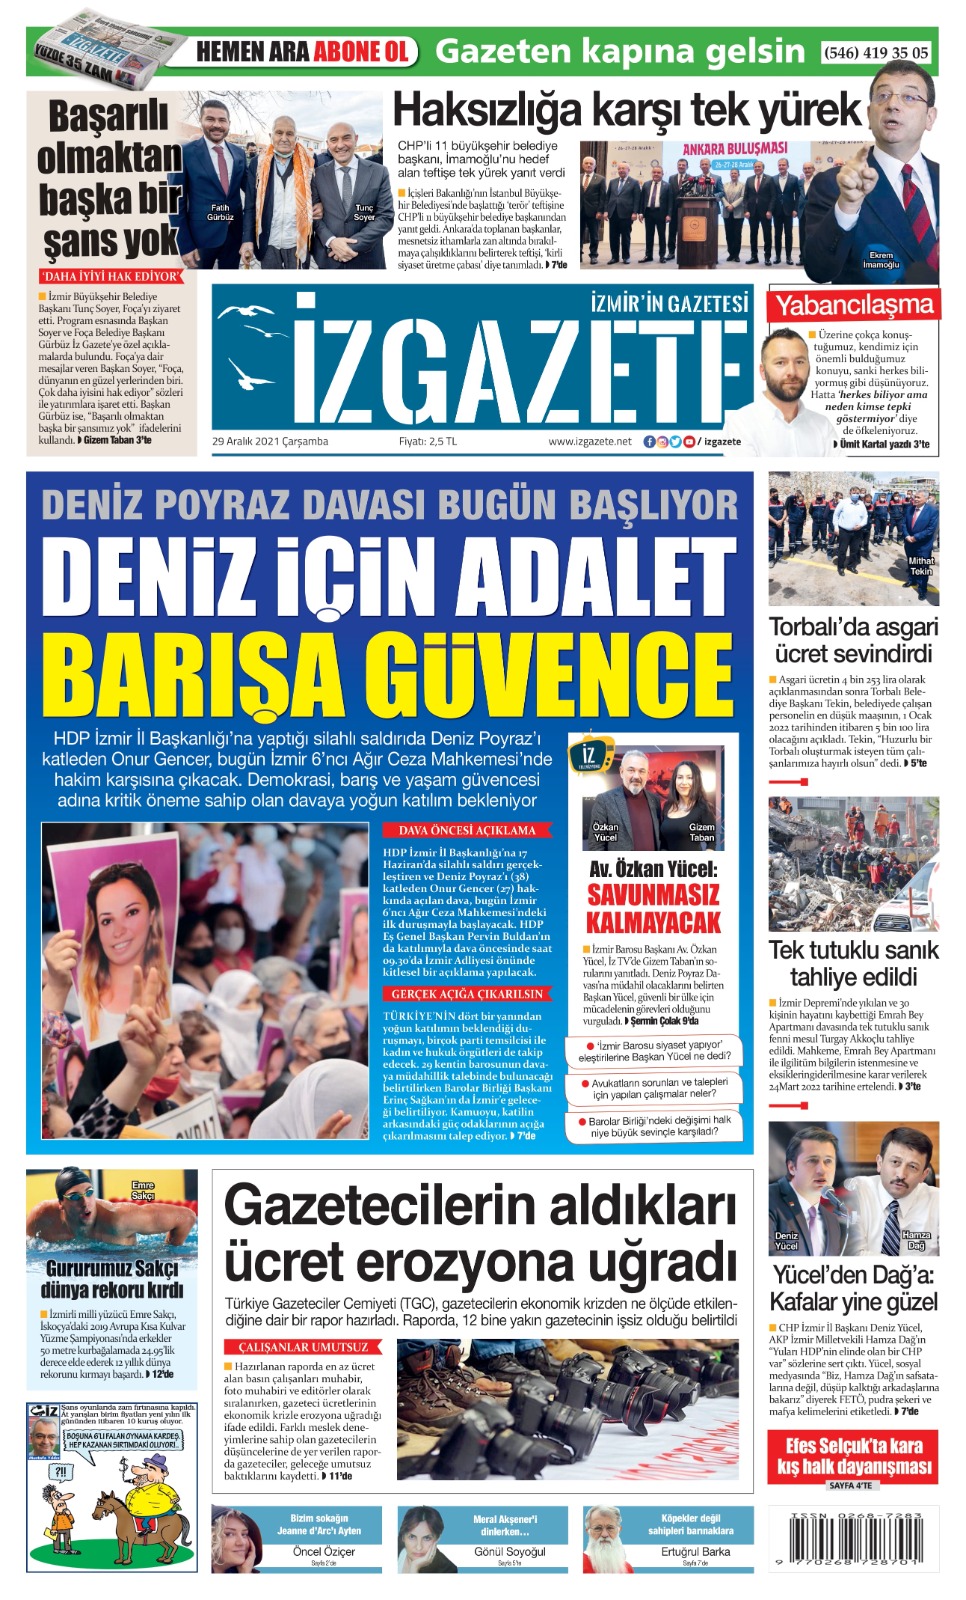 İz Gazete - İzmir'in Gazetesi - 29.12.2021 Manşeti